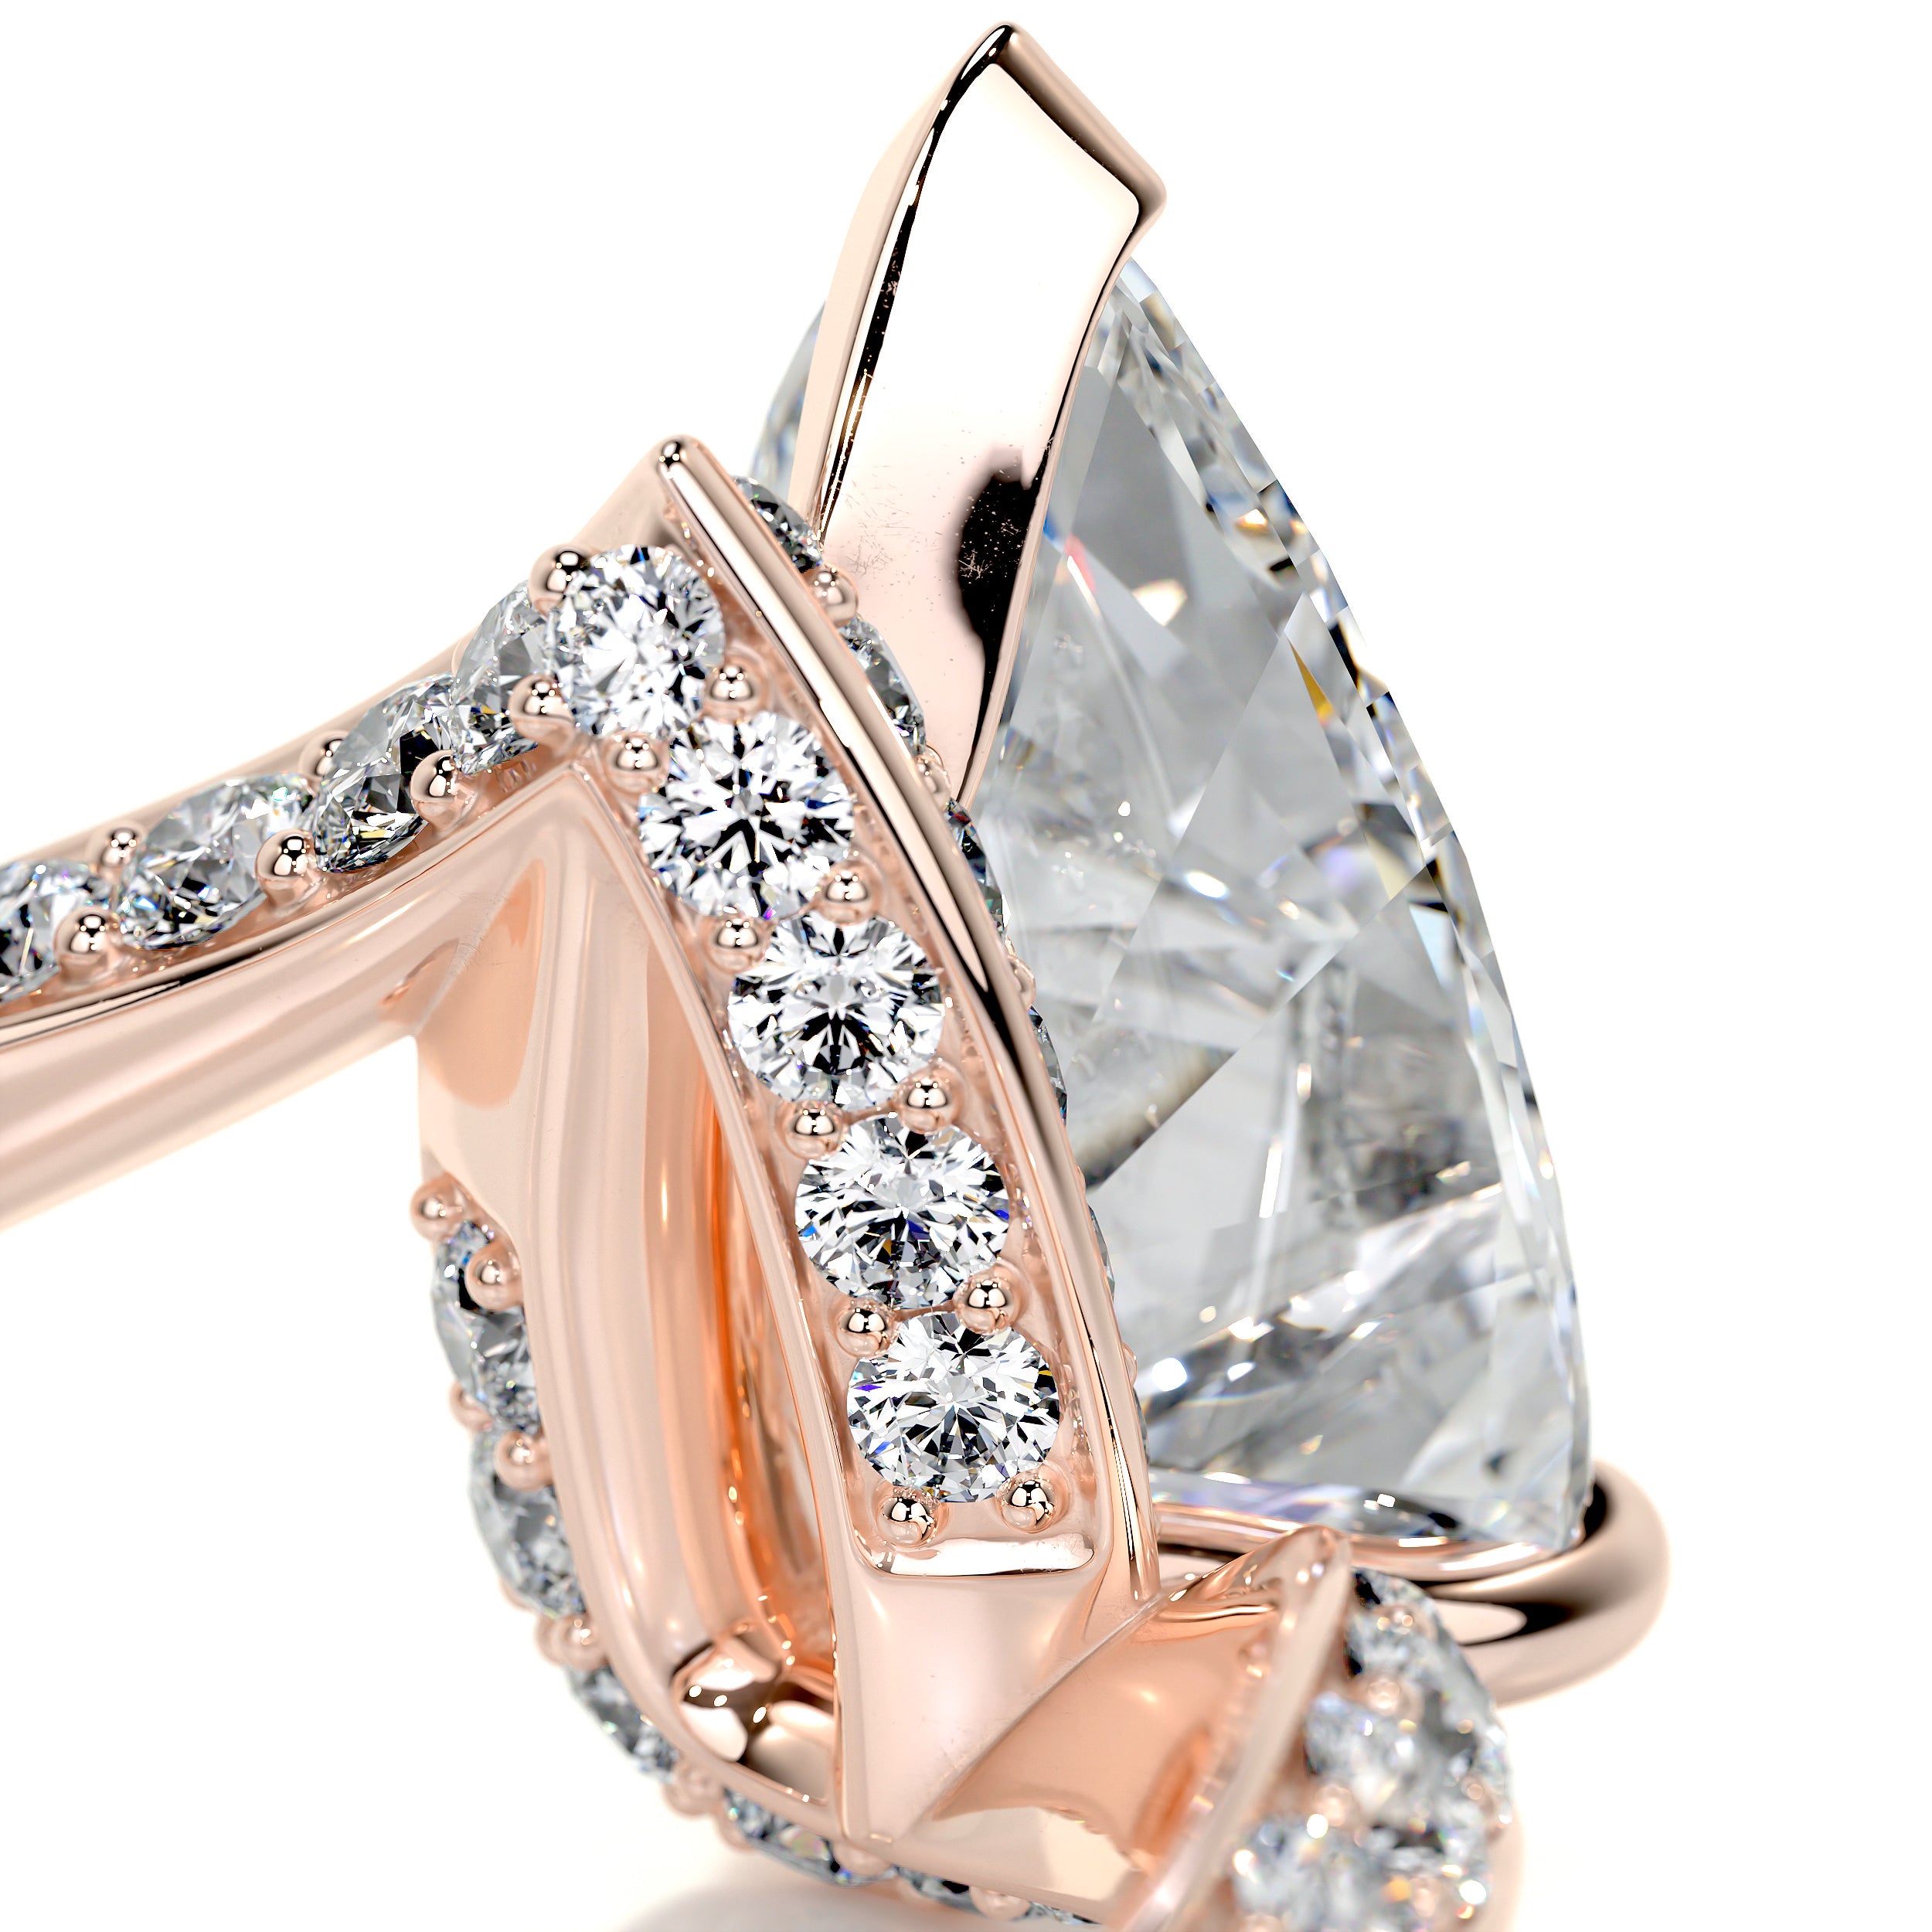 Sabrina Diamond Engagement Ring   (2.5 Carat) -14K Rose Gold